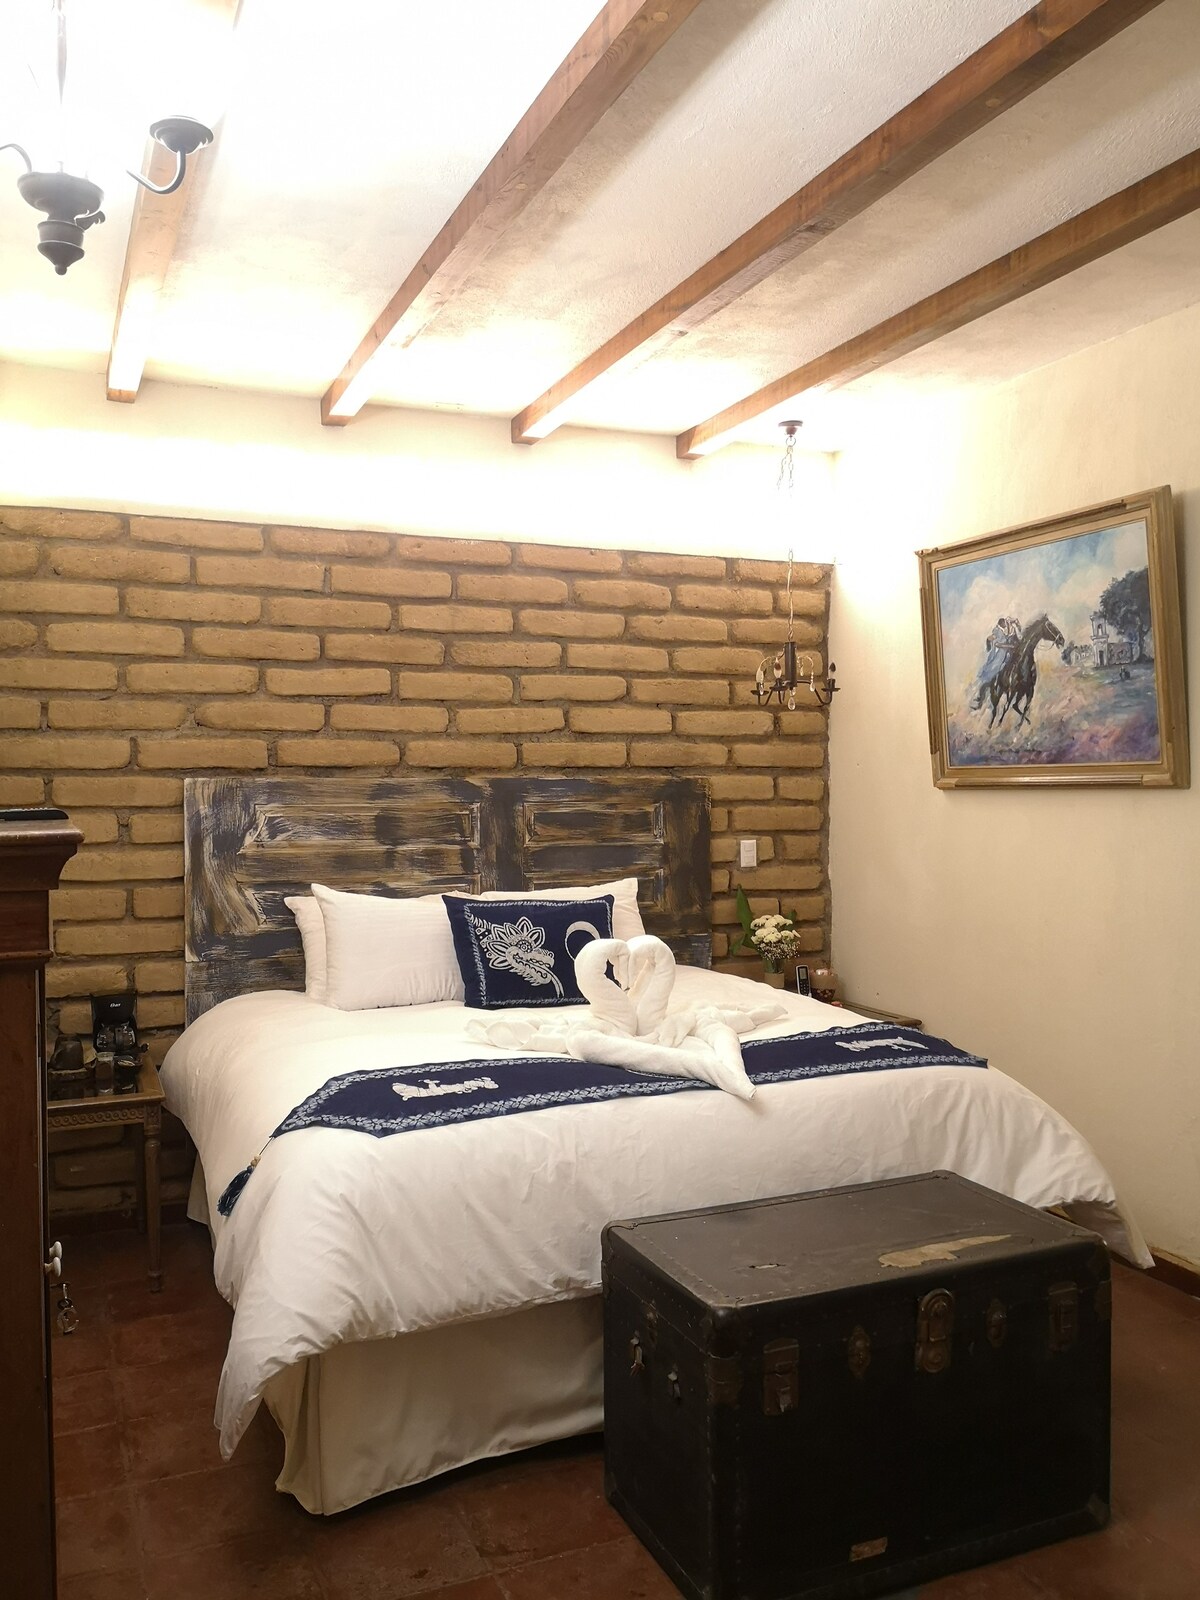 Casa 1800 - Indigo Suite 1 King bed